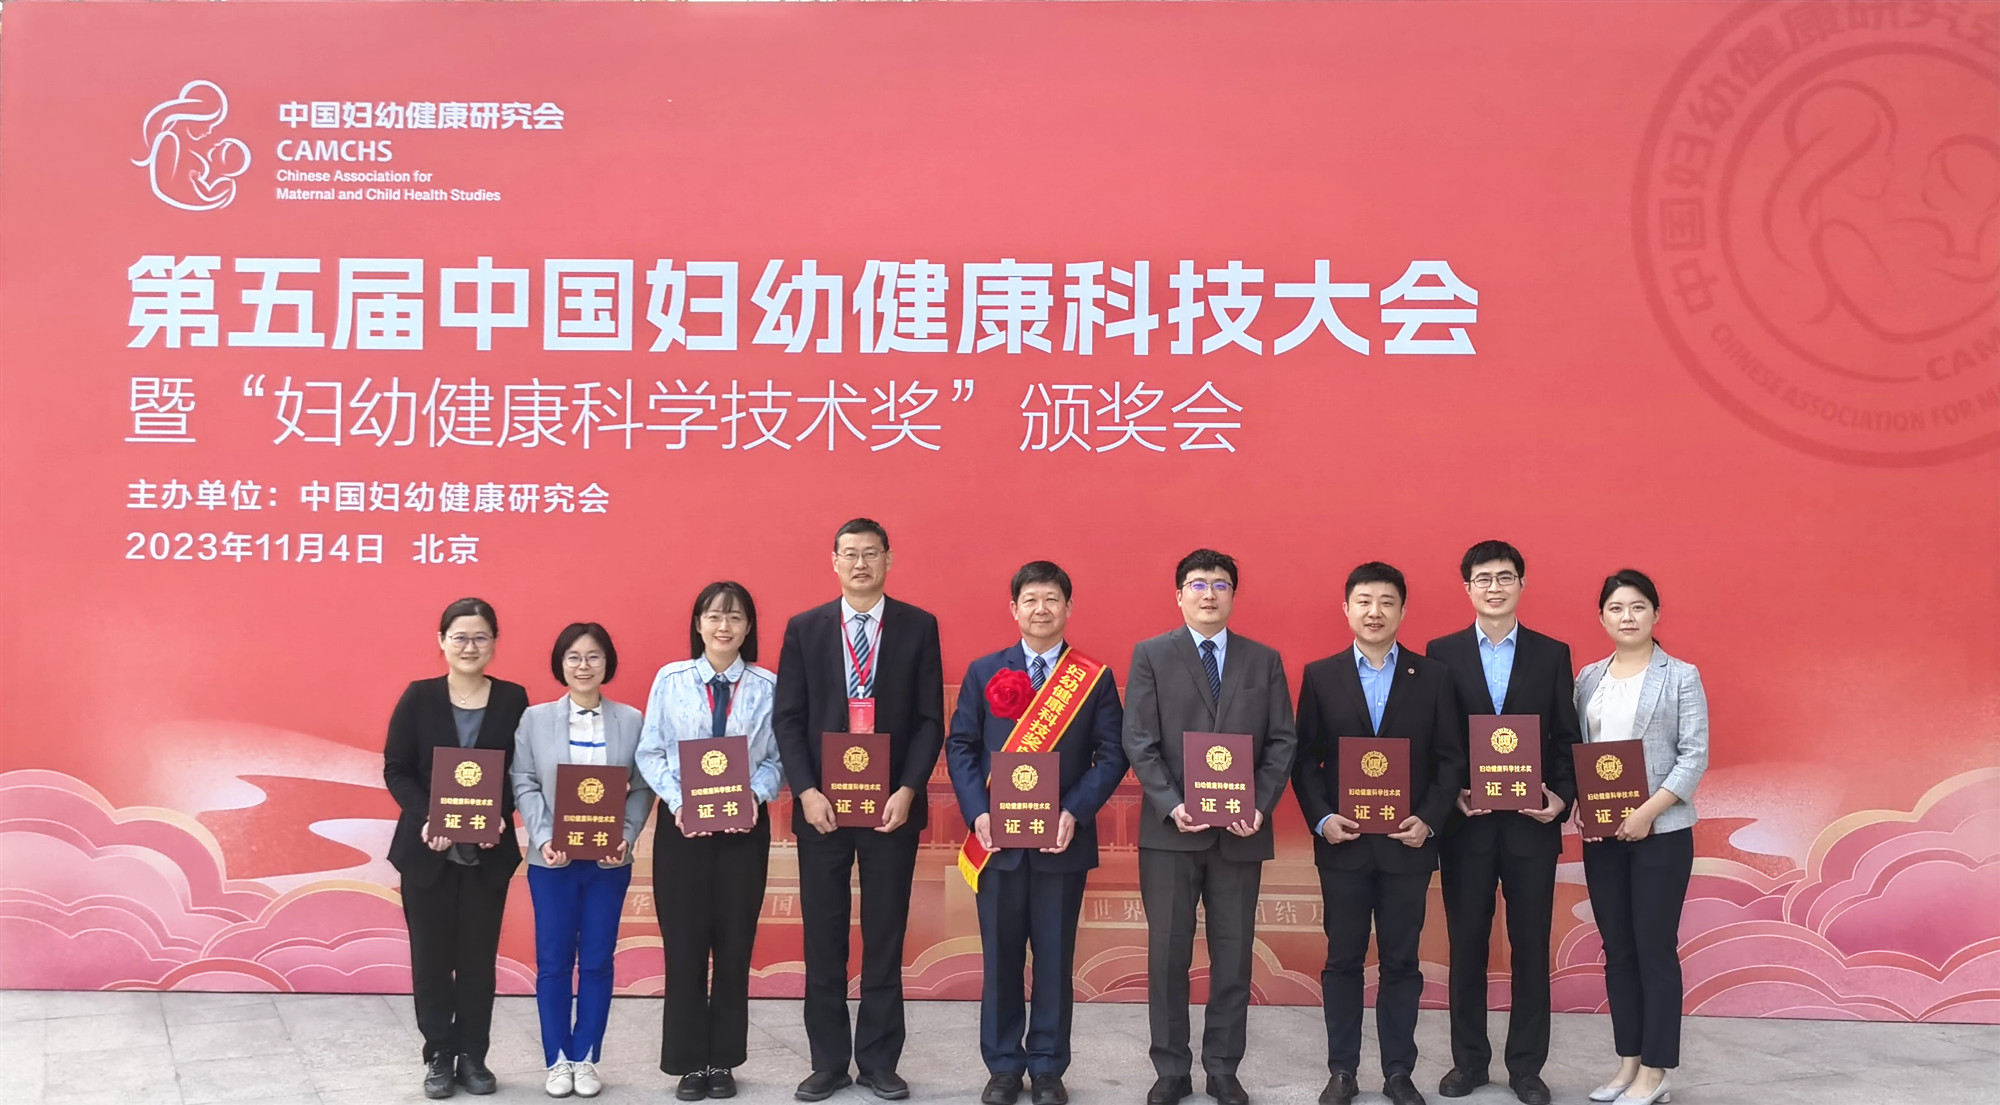 郑树国教授团队荣获全国妇幼健康科学技术奖自然科学奖一等奖